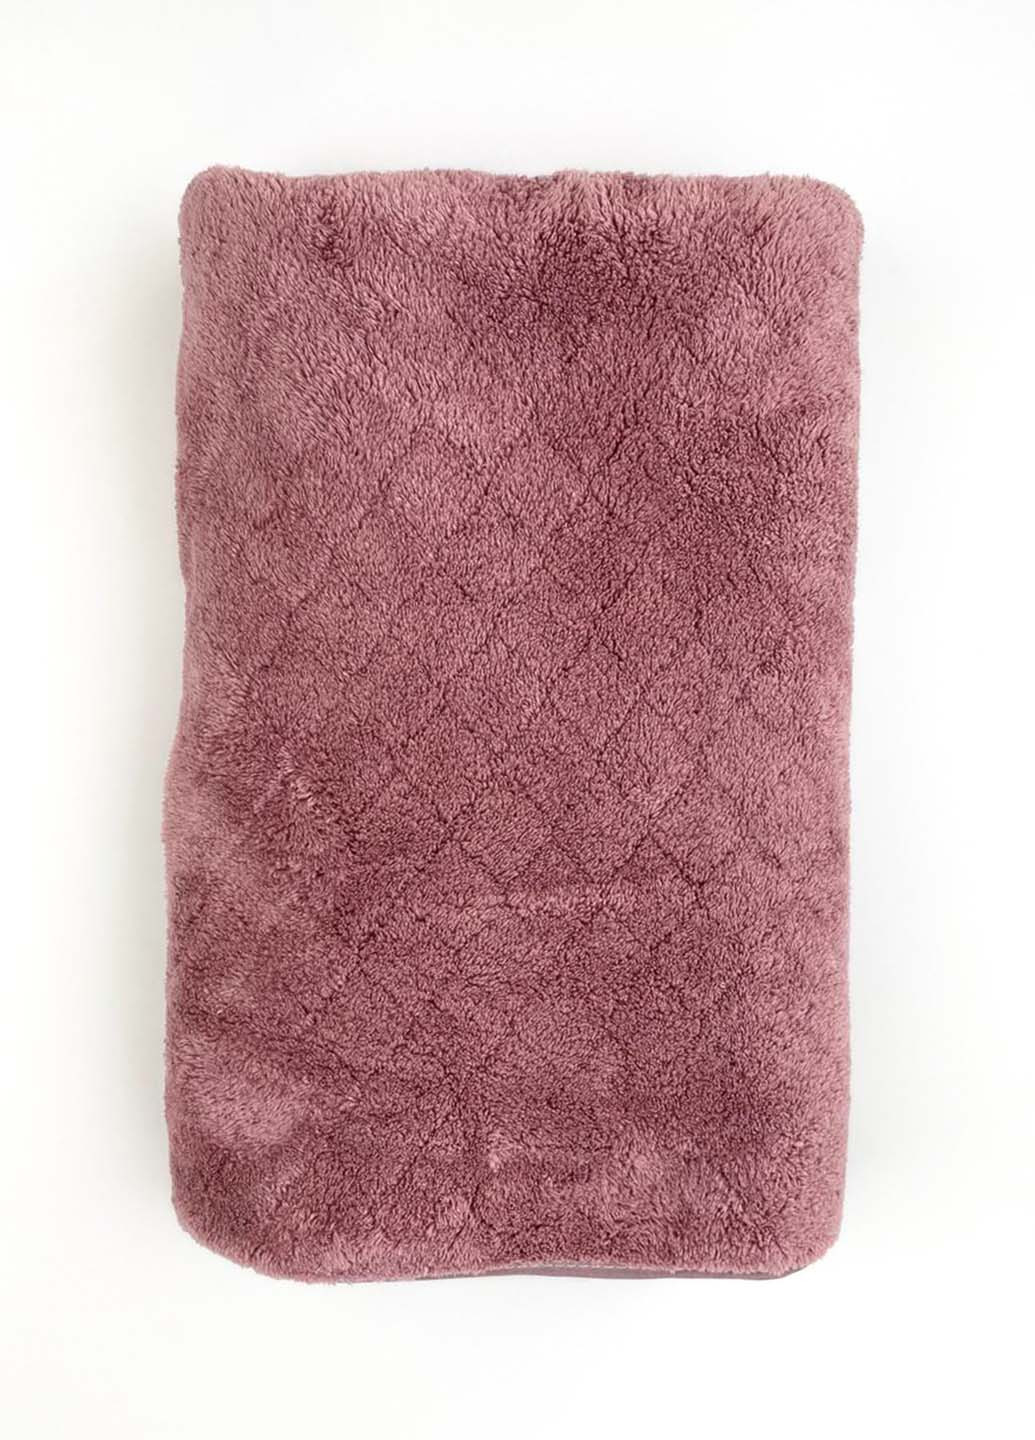 Homedec полотенце лицевое микрофибра 100х50 см однотонный лиловый производство - Турция